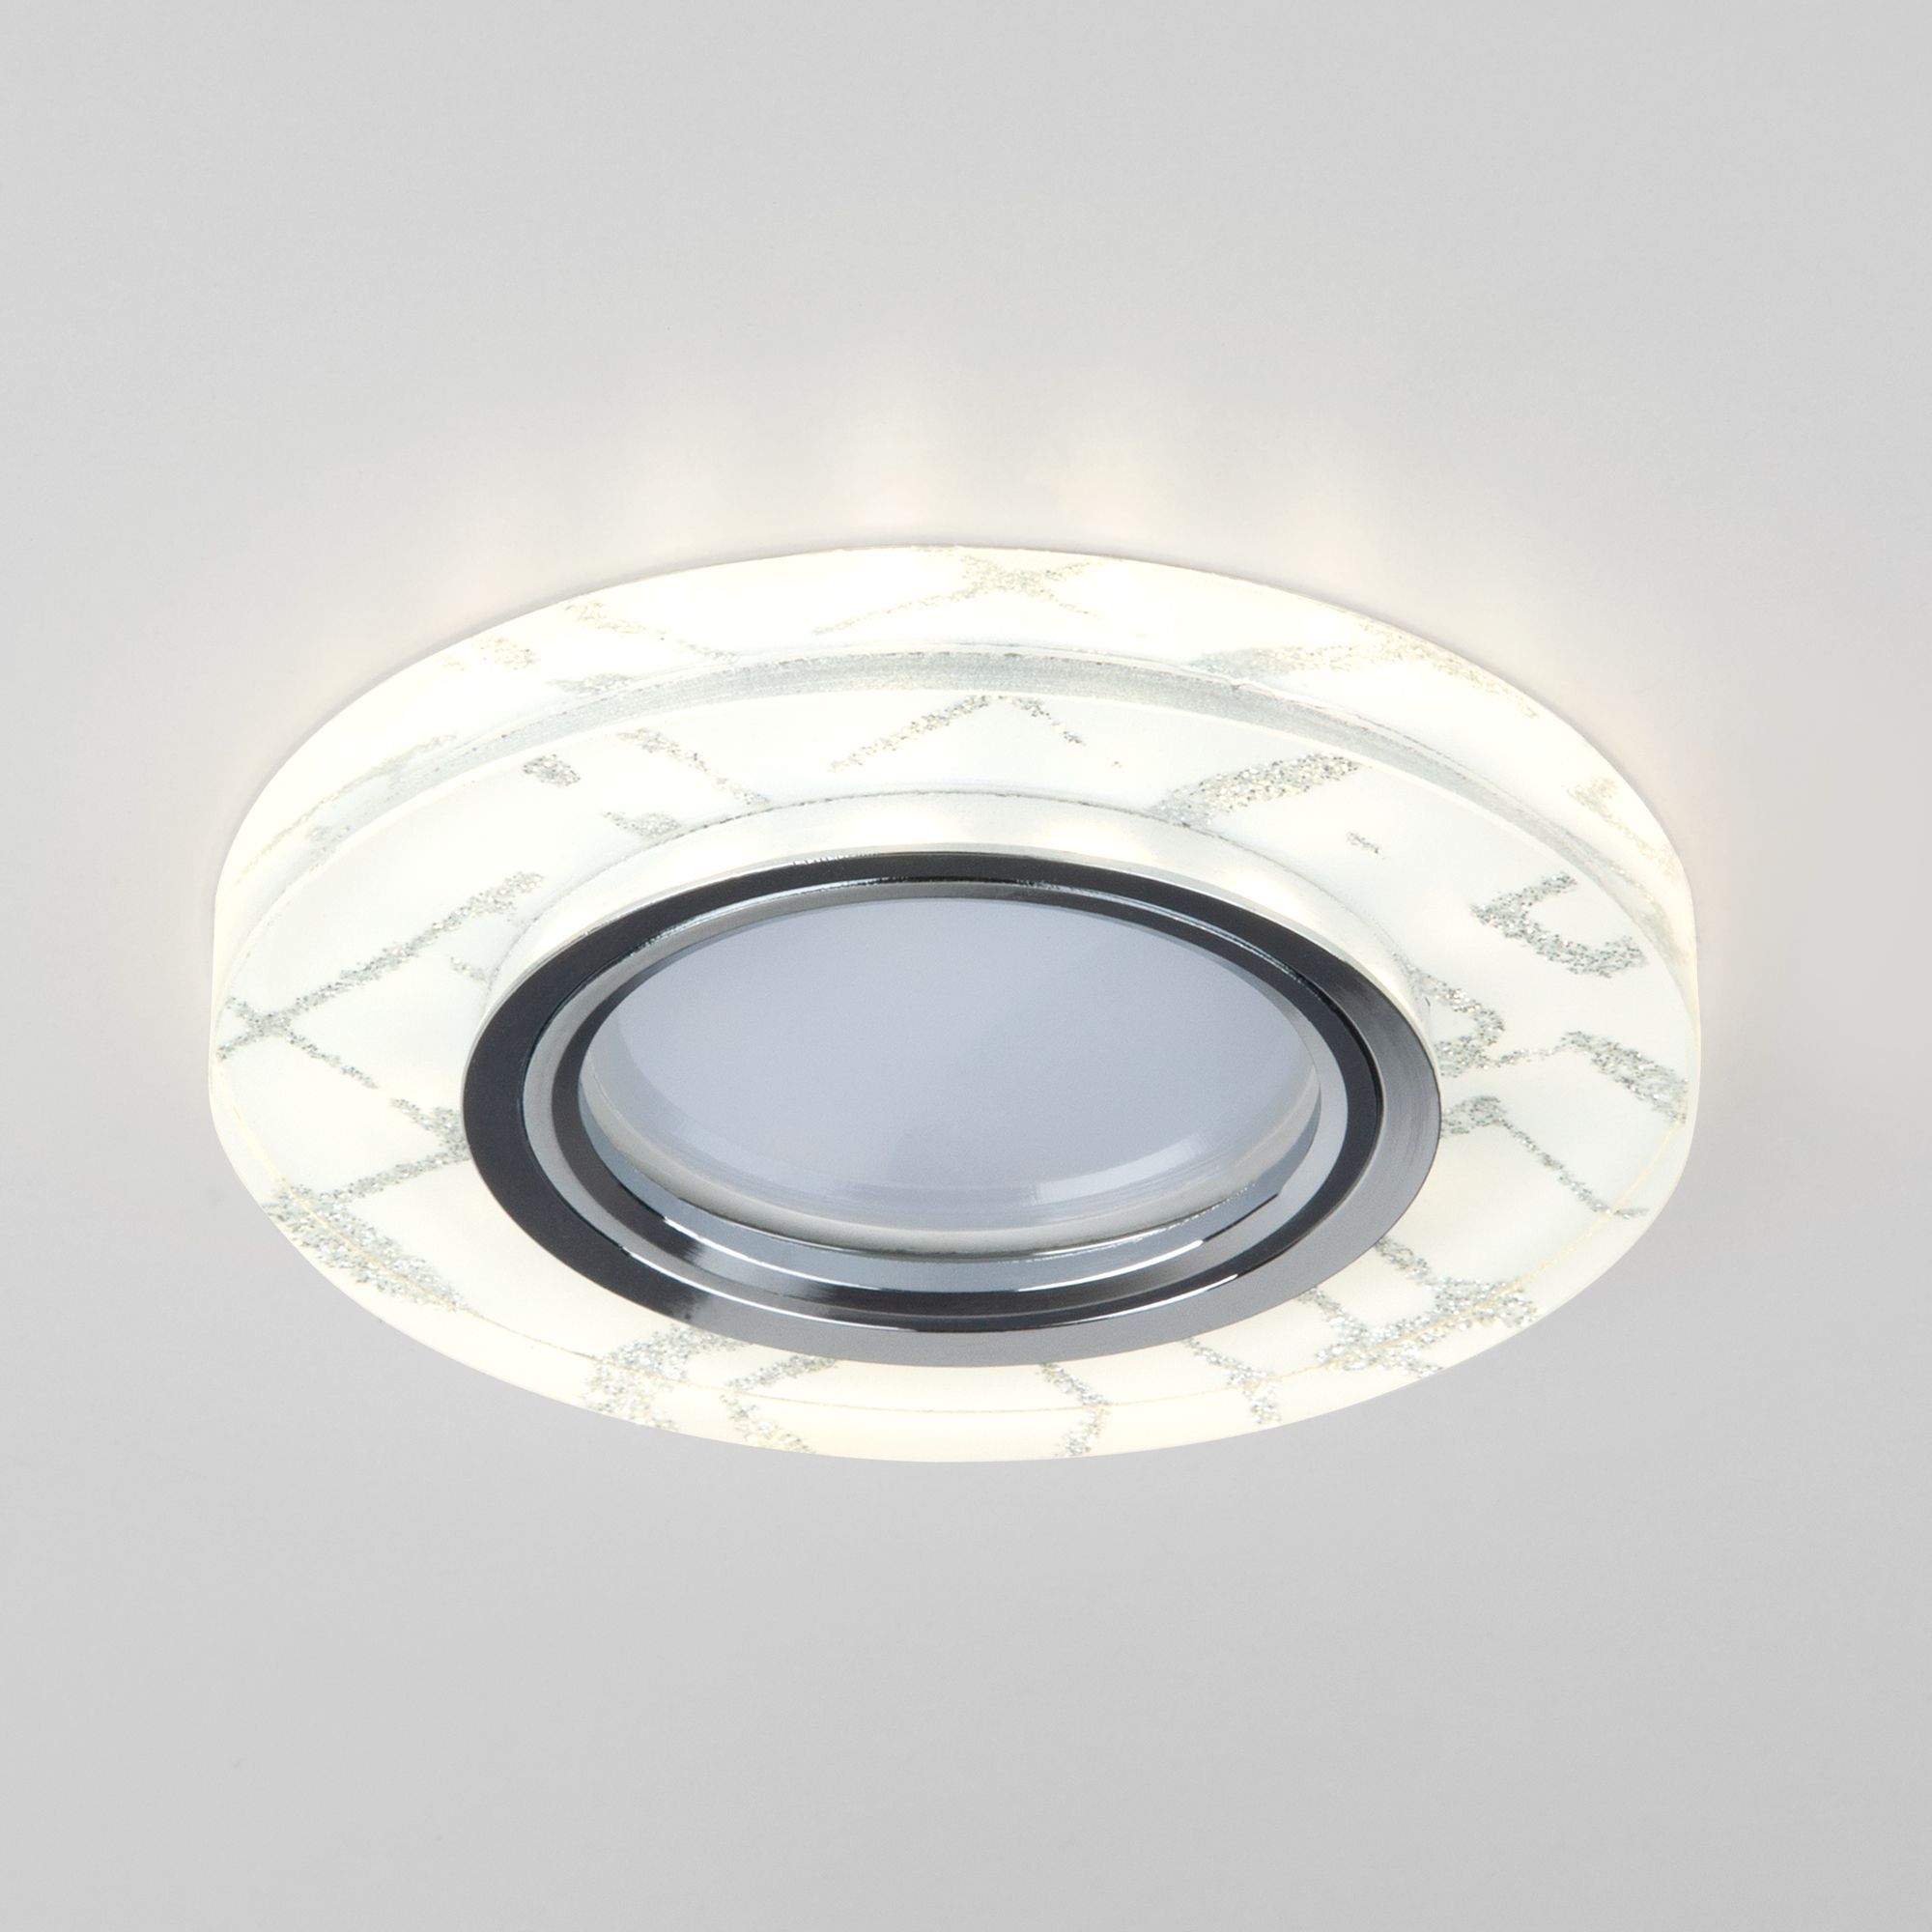 Точечный светильник с LED подсветкой 8371 MR16 WH/SL белый/серебро. Фото 2